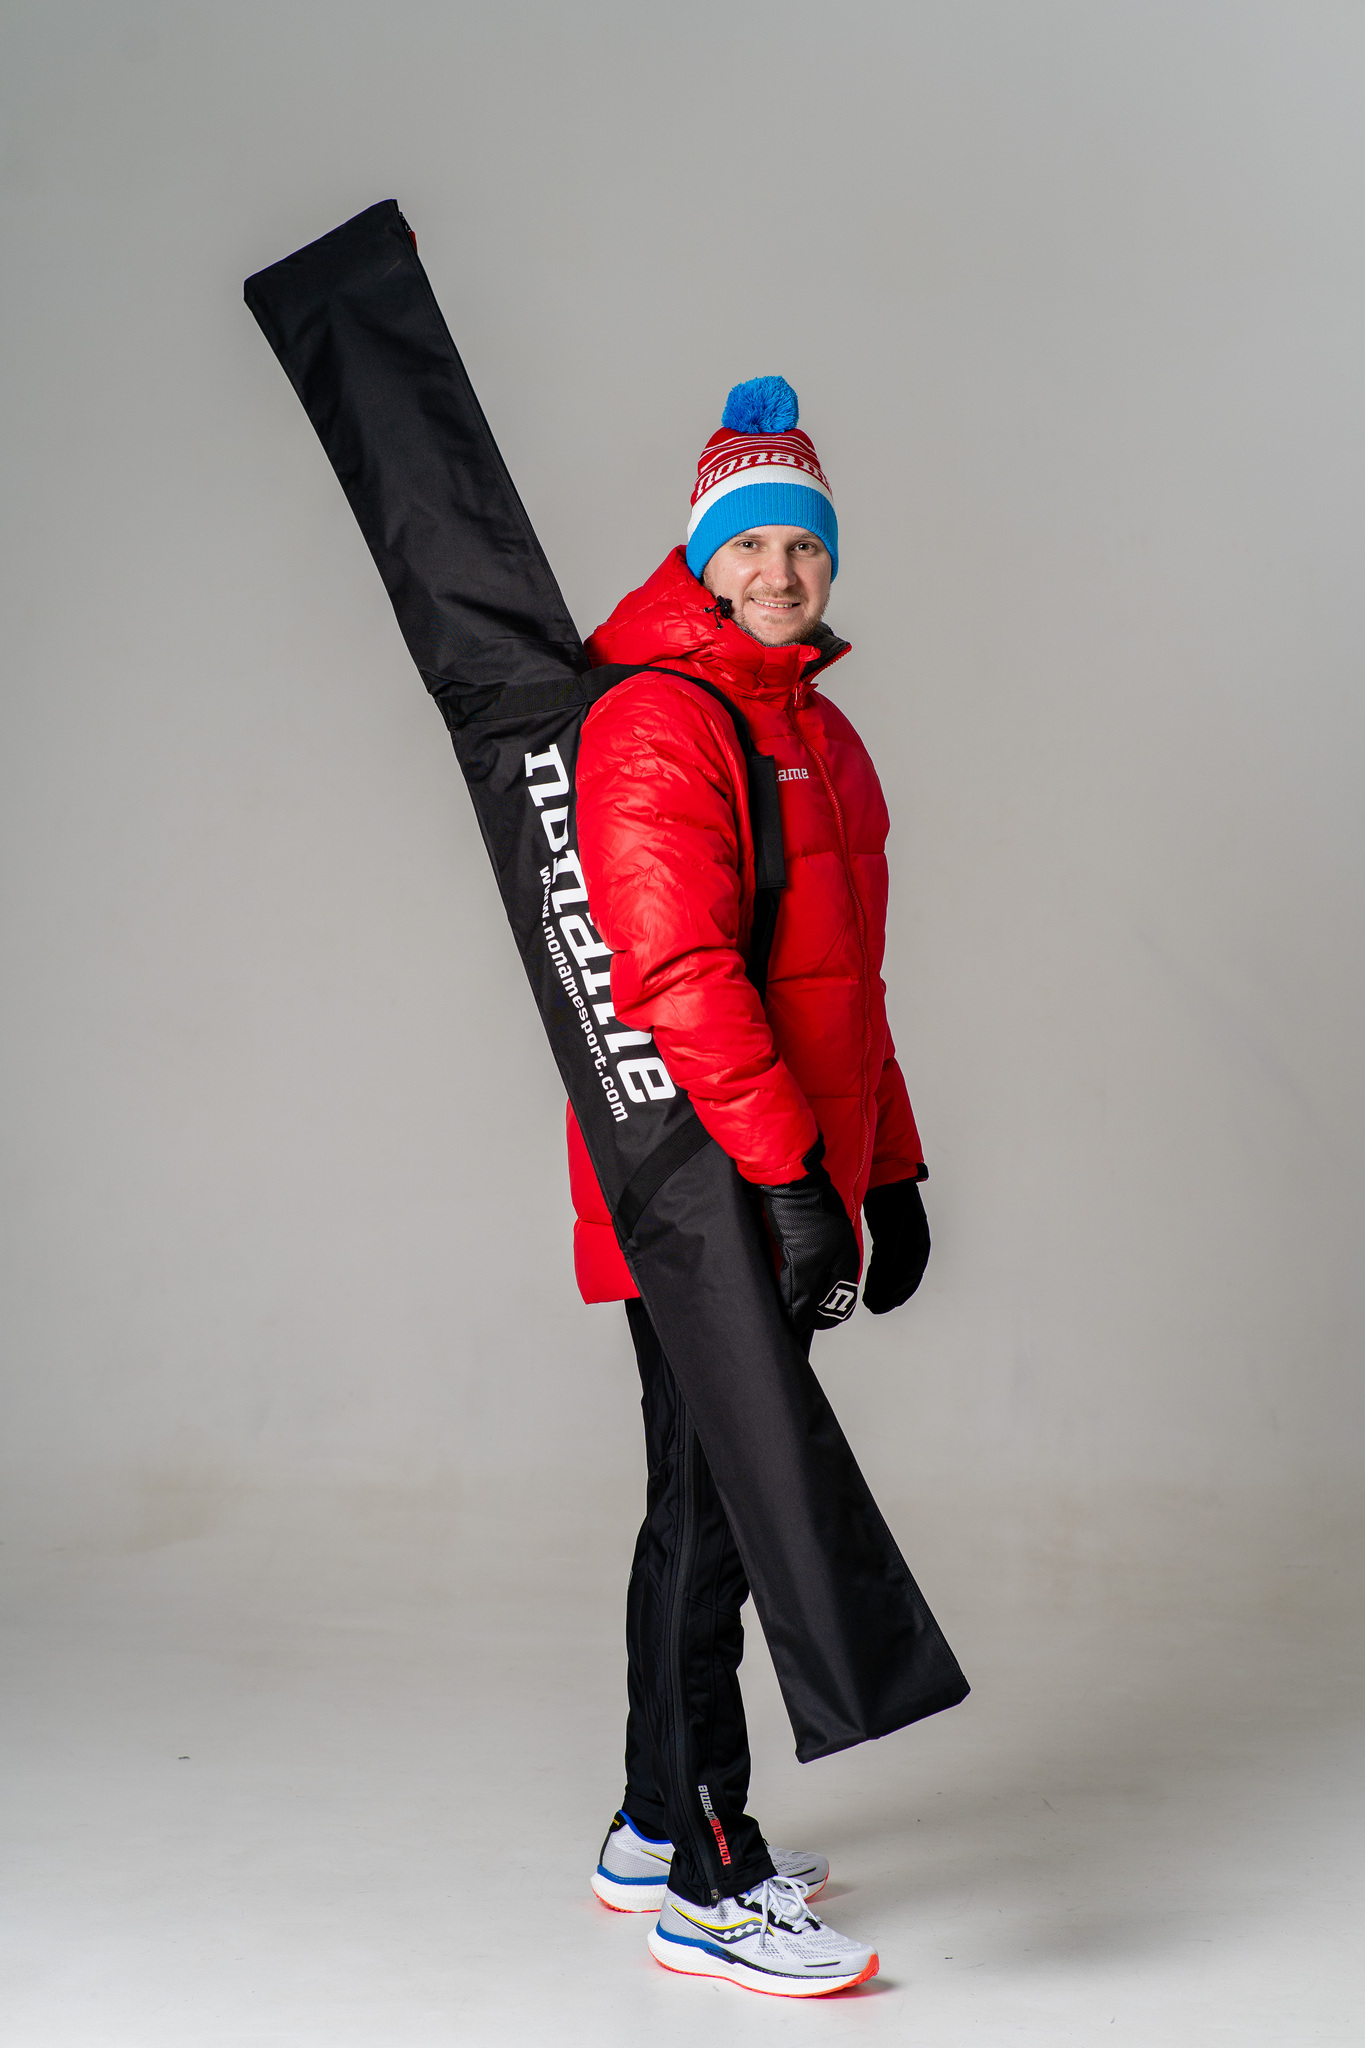 Чехол для лыж Noname Ski bag - 1